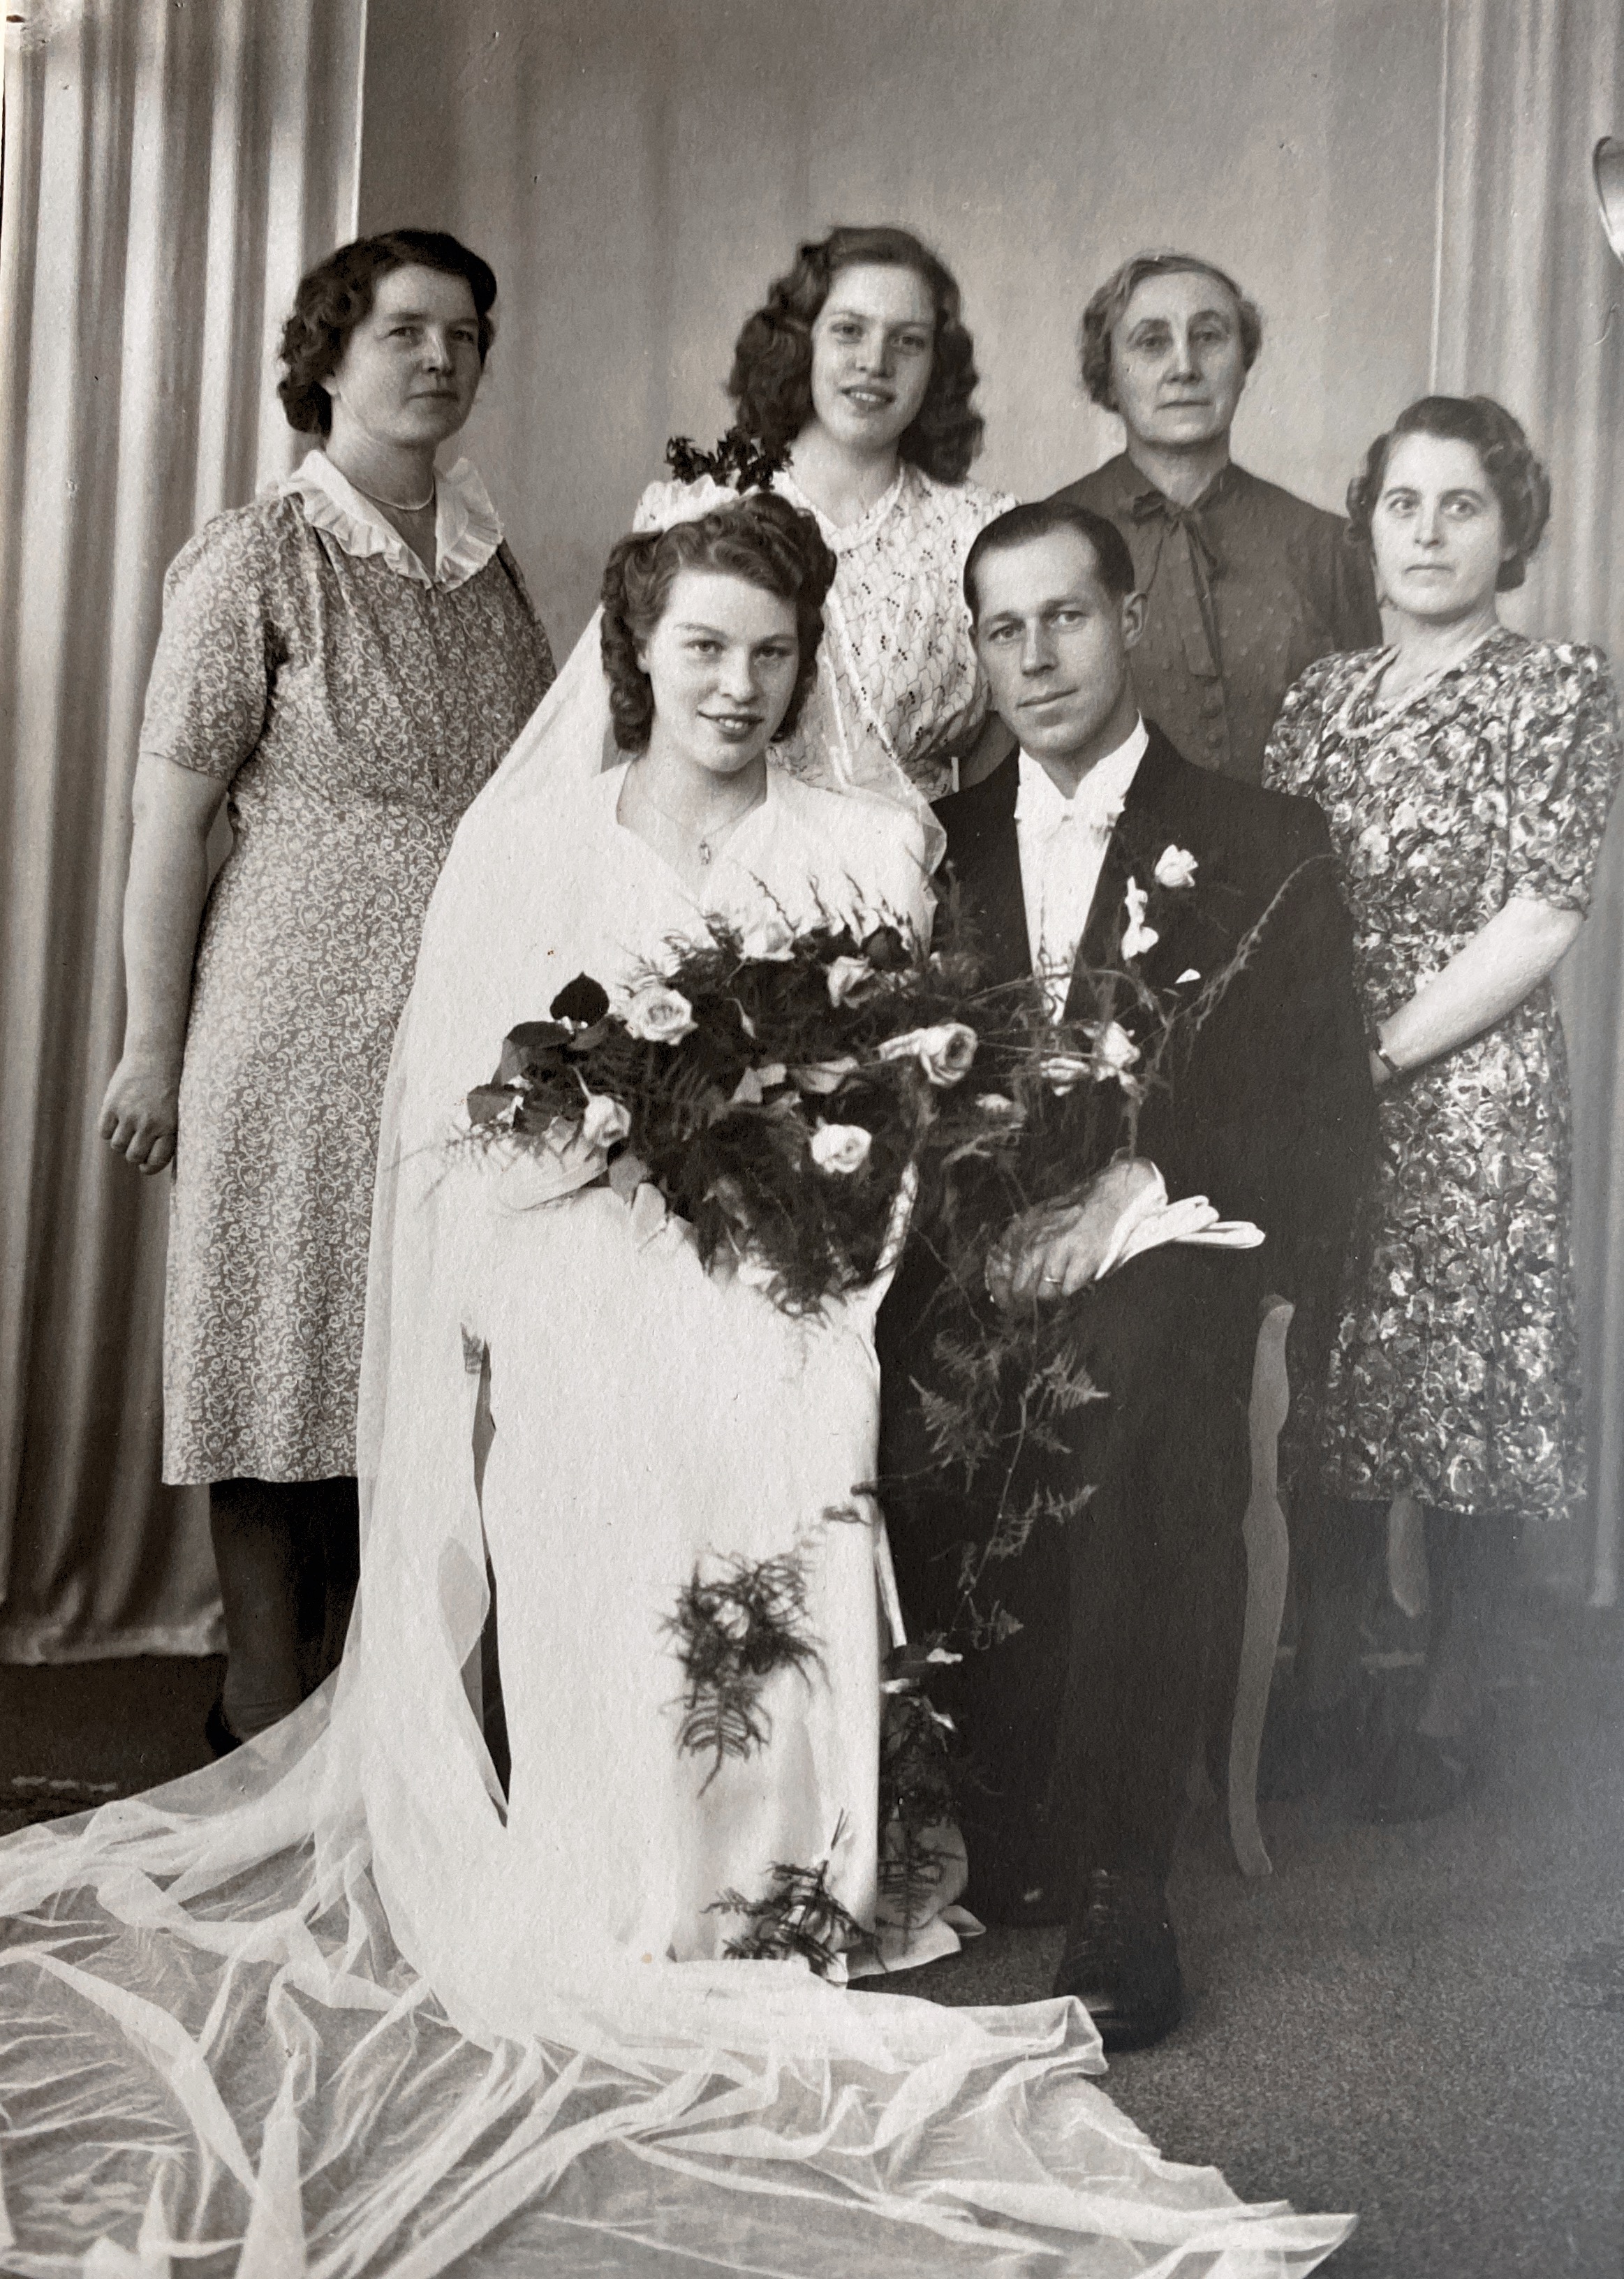 Annie och Oscars bröllop 1944 i Lekaryds kyrka med Irma ( Annies mor) och fastrar Ines och iIngeborg